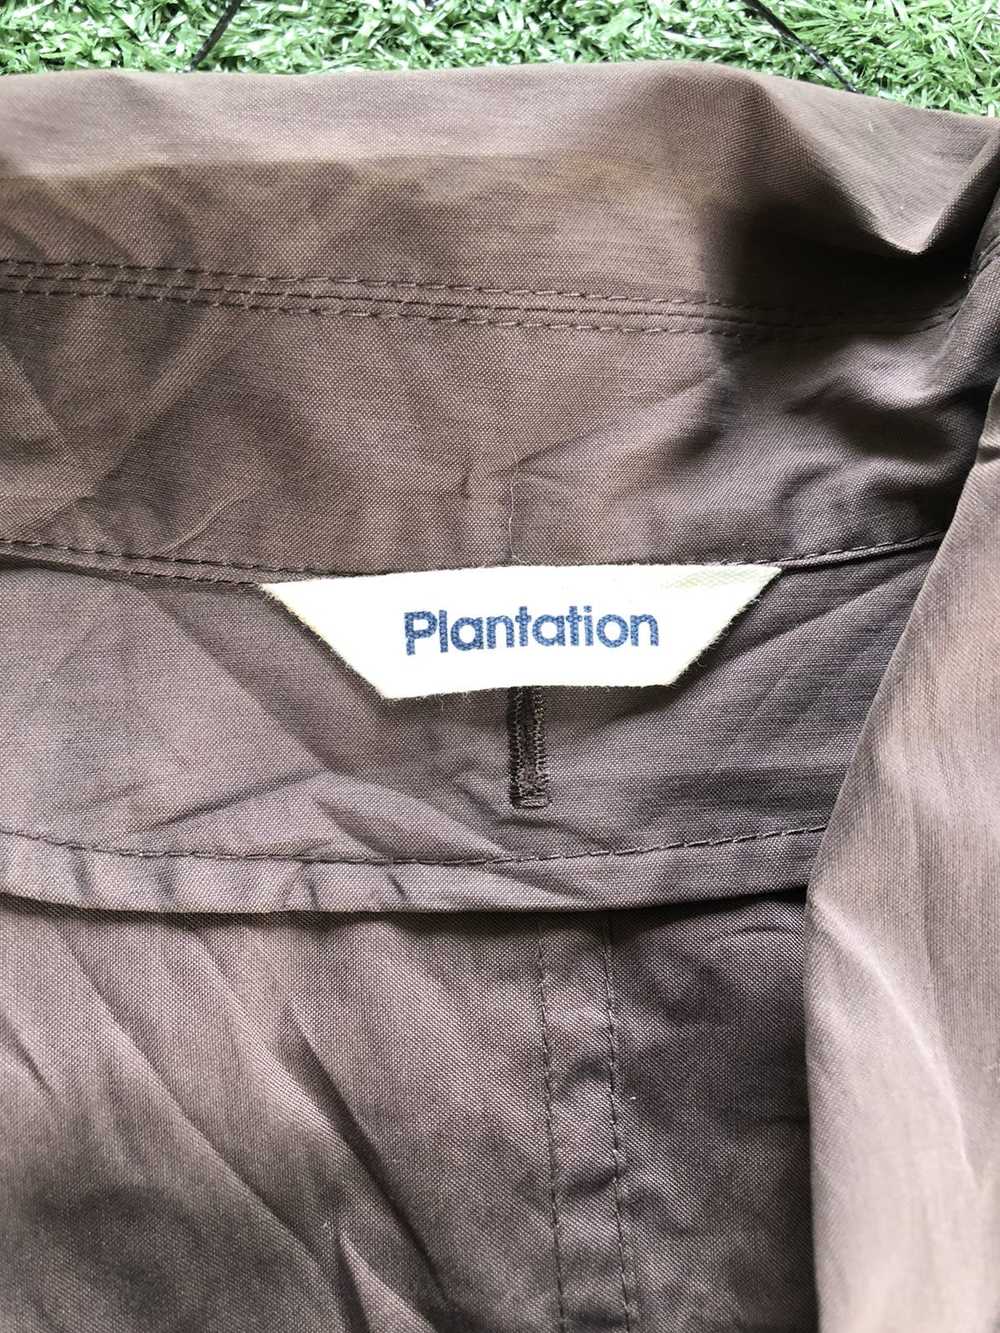 Vintage Plantation issey Miyake Bondage Jacket - image 5